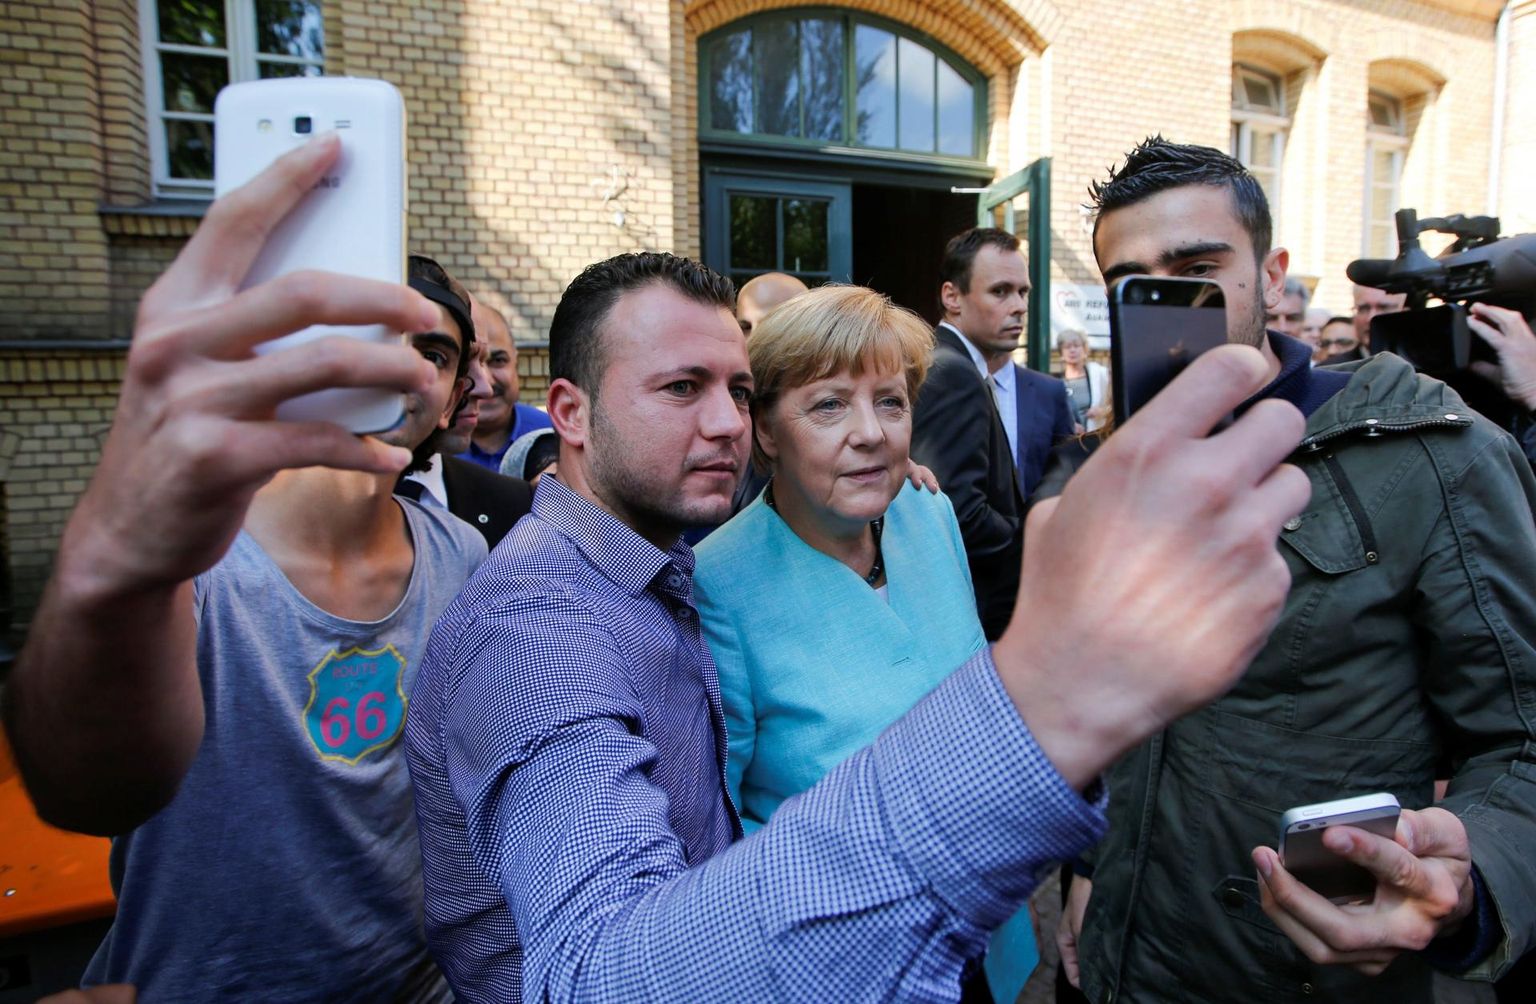 Saksamaa kantsler Angela Merkel poseerib selvefotoks koos Süüriast ja Iraagist pärit põgenikega Berliinis 2015. aasta sügisel. 